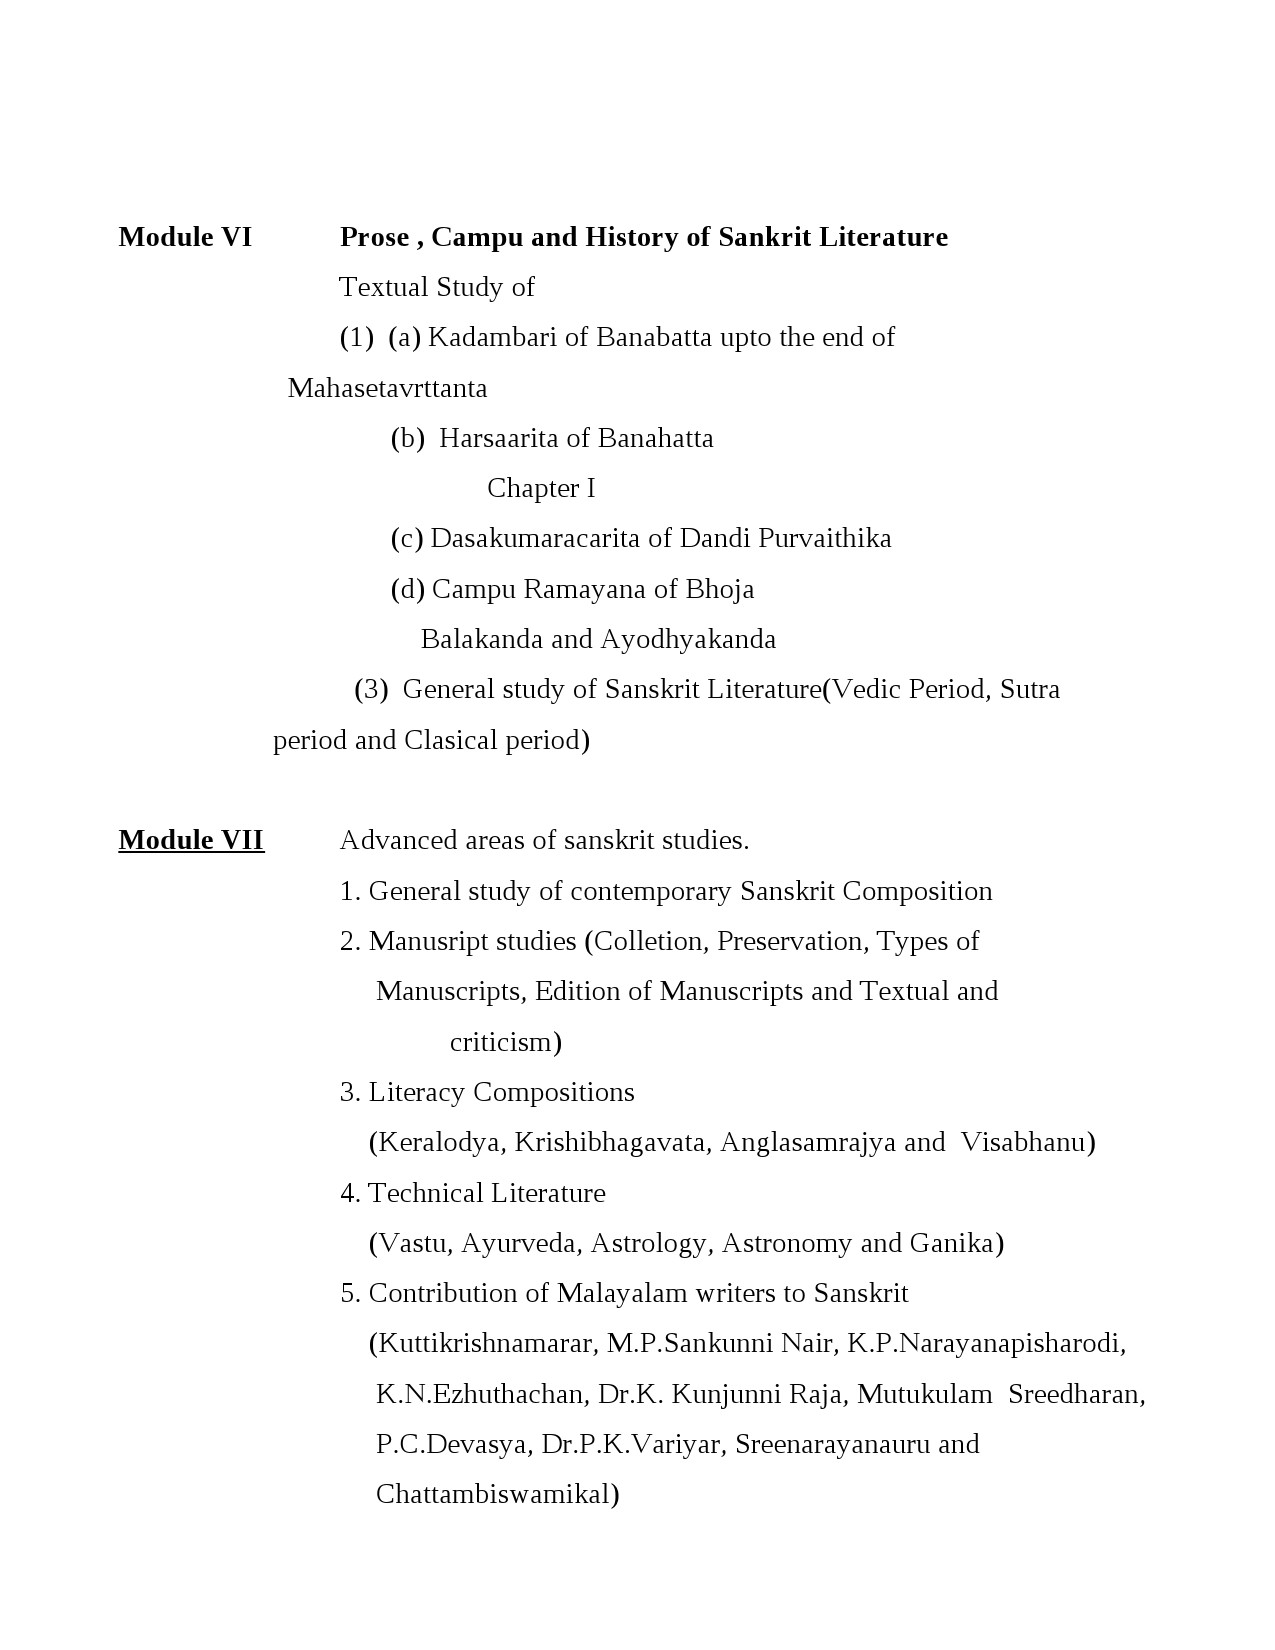 Sanskrit Syllabus for Kerala PSC 2021 Exam - Notification Image 4